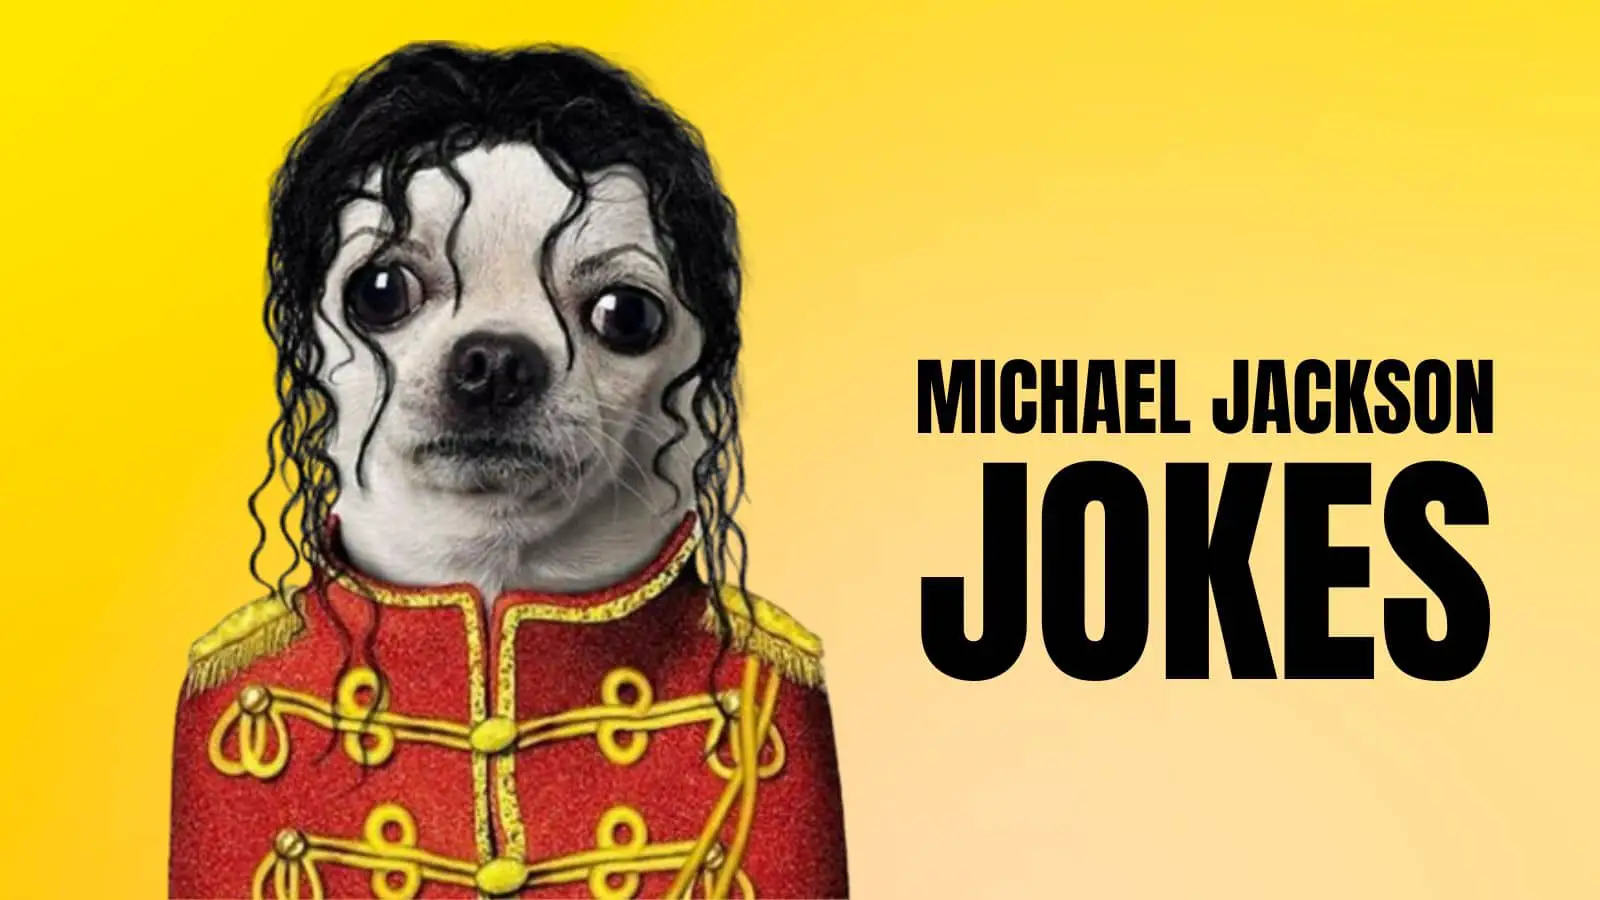 Michael Jackson Jokes On Pop Star